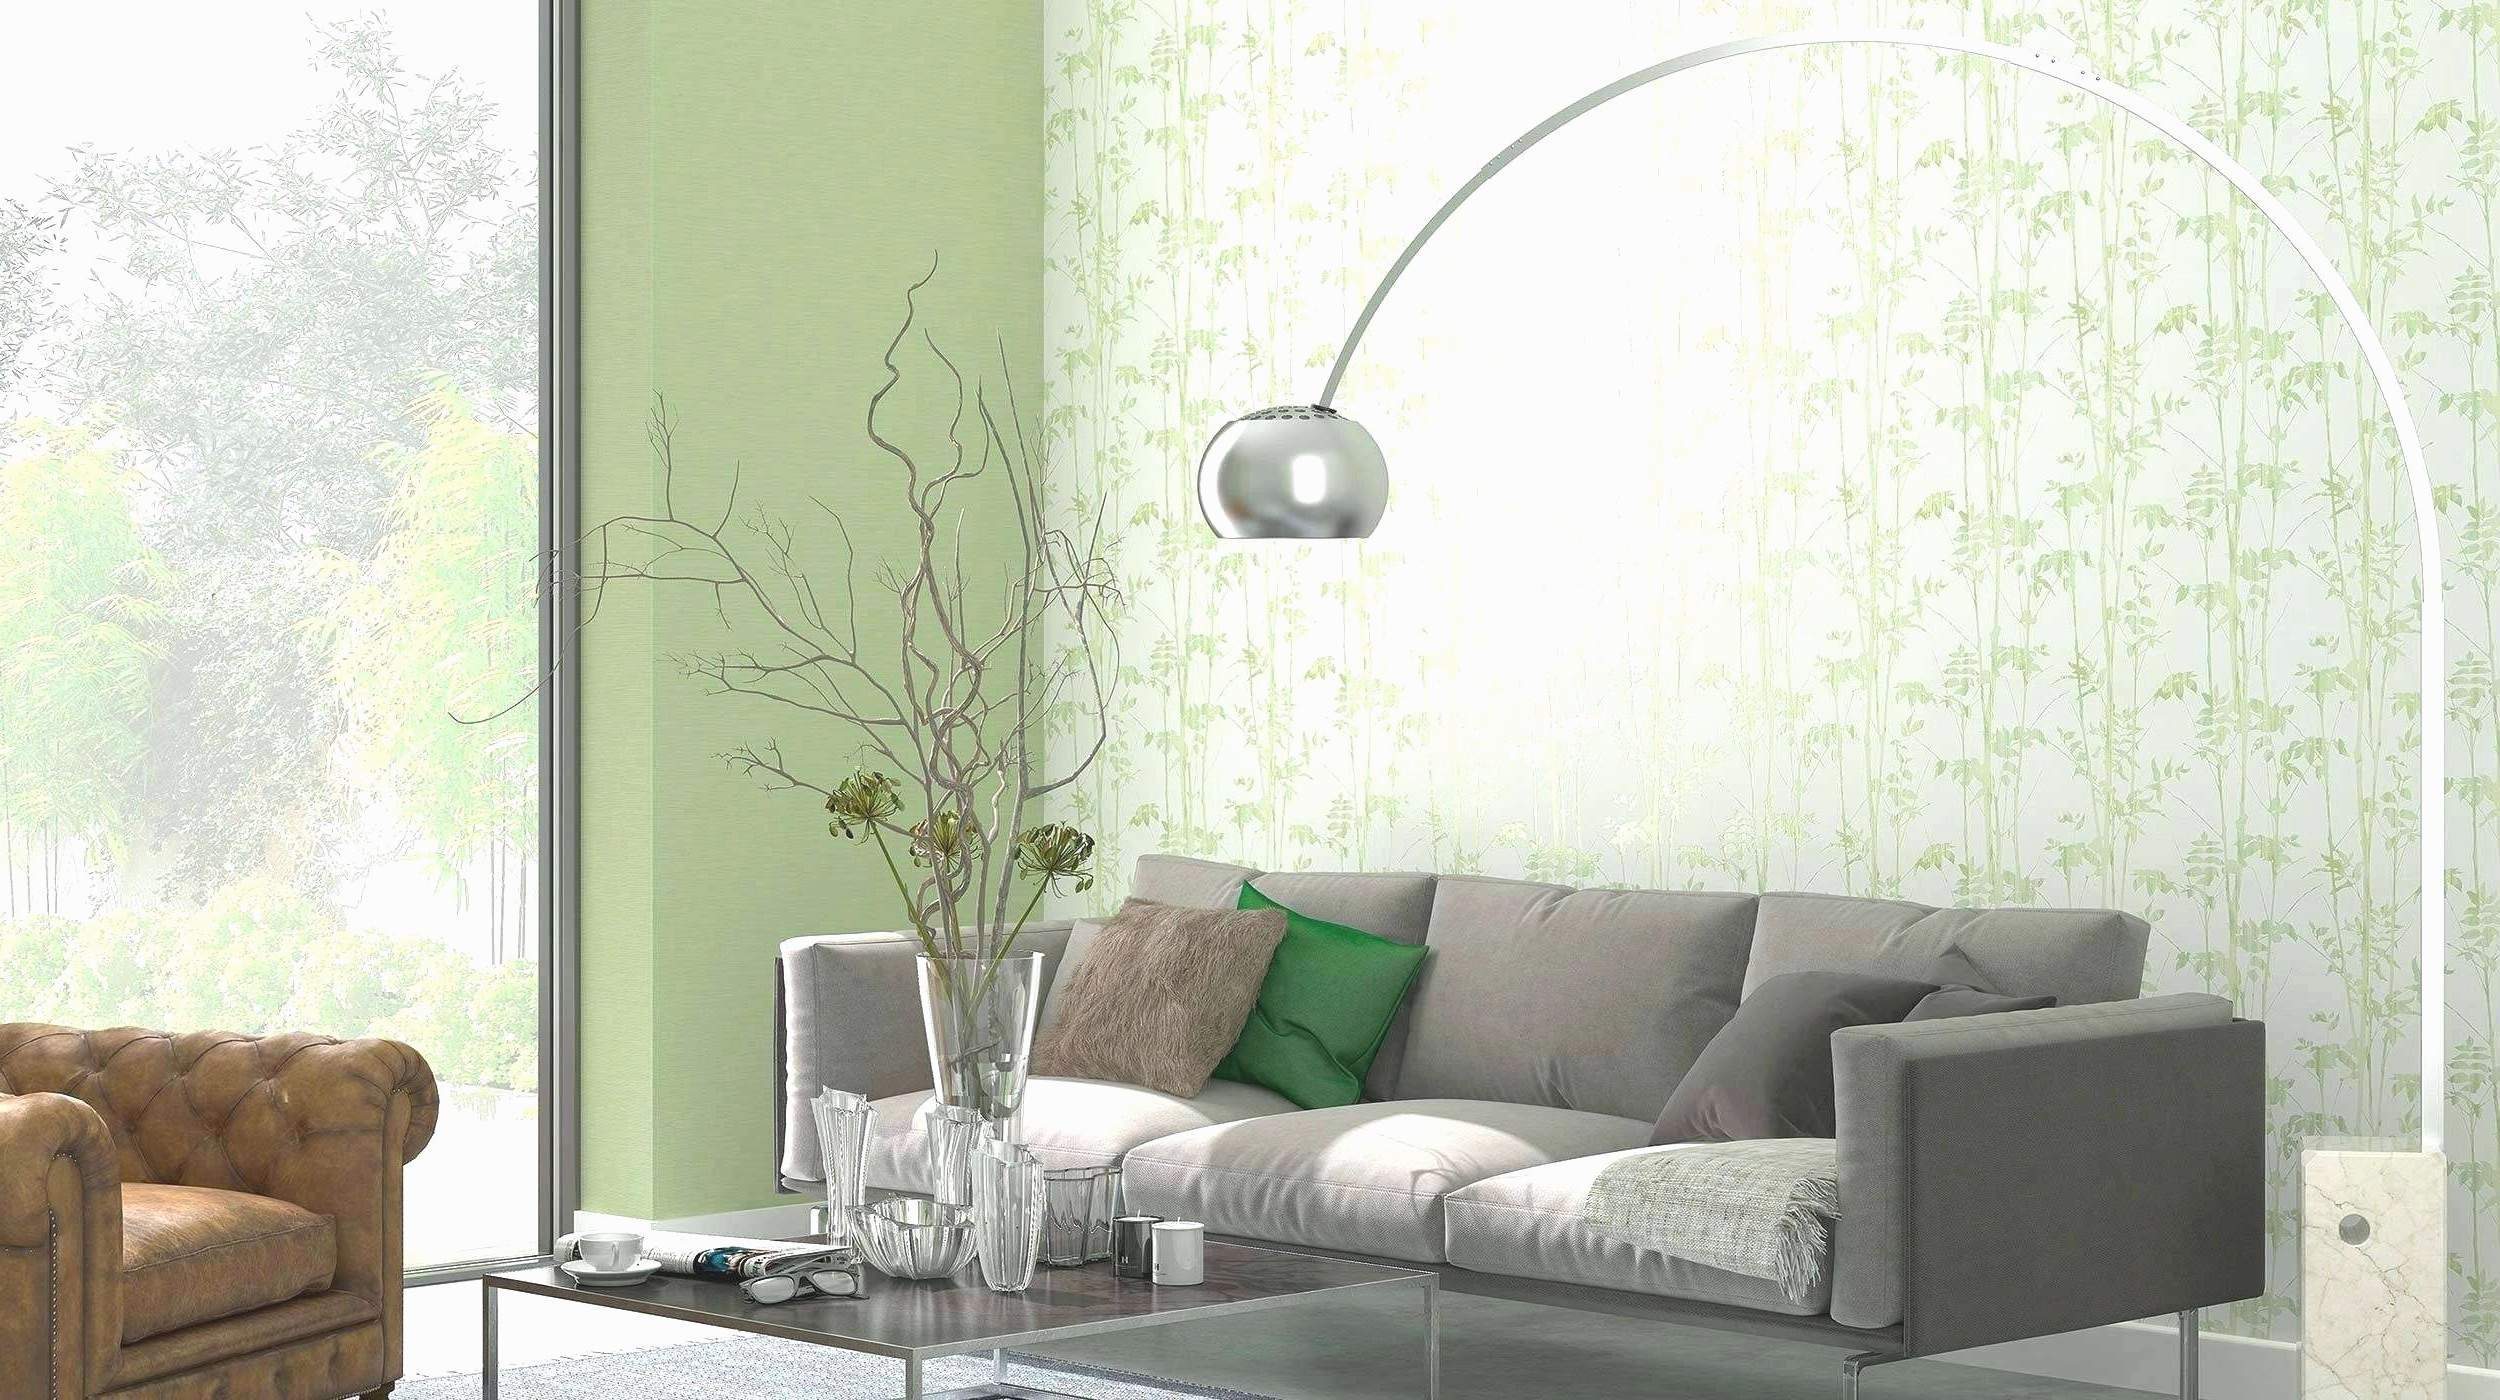 dekoration wohnzimmer ideen luxus wanddeko ideen wohnzimmer design sie mussen sehen of dekoration wohnzimmer ideen